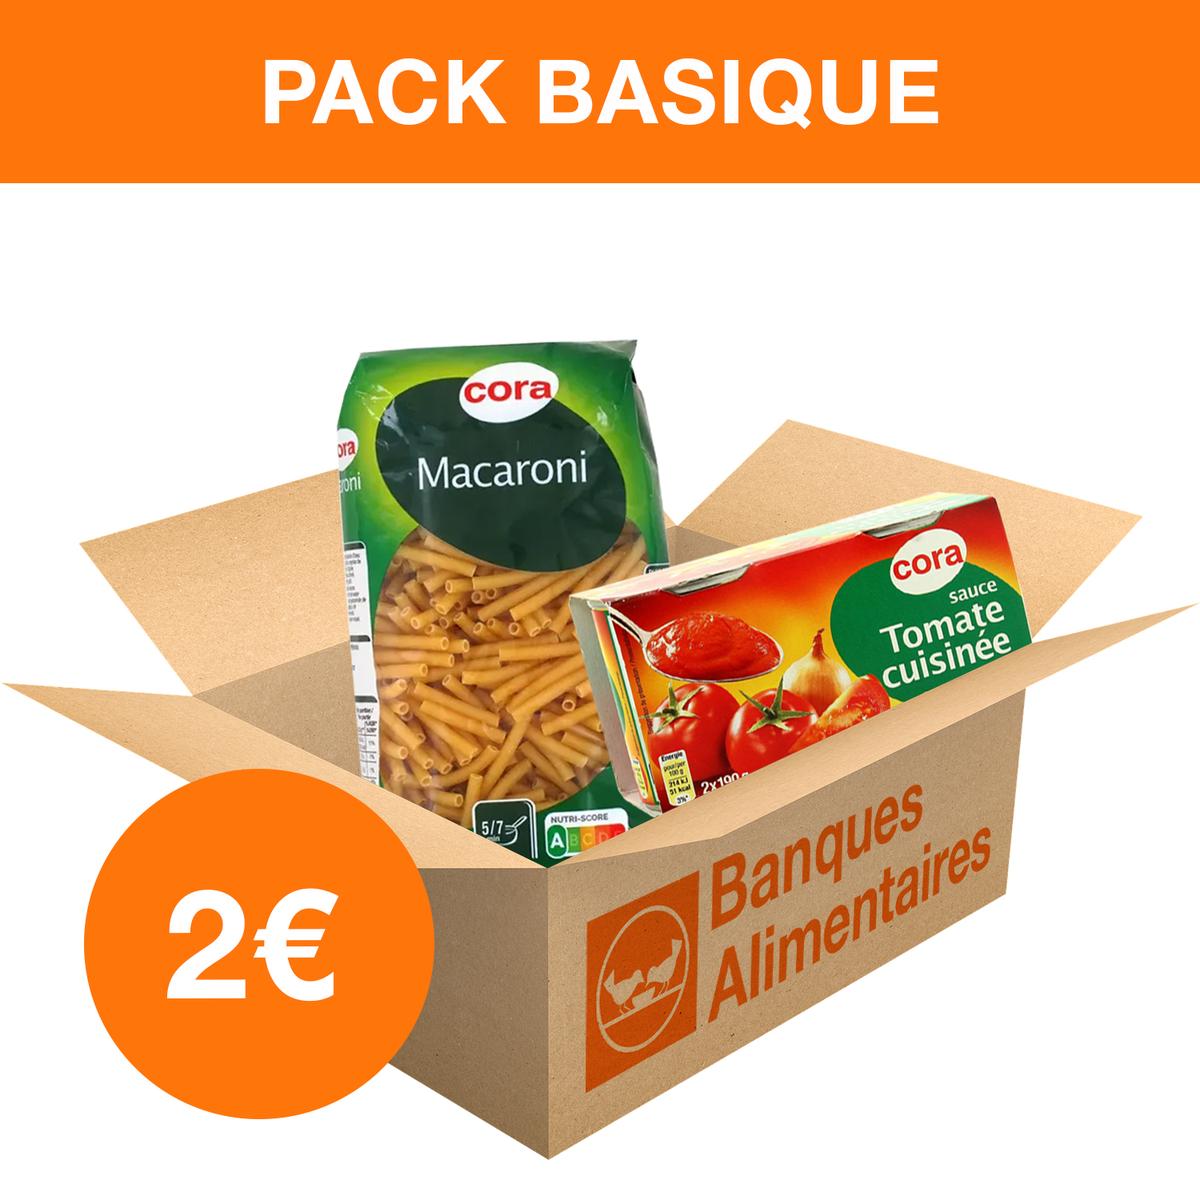 Achat / Vente Opération Banque Alimentaire Pack 2 euros, 2 produits